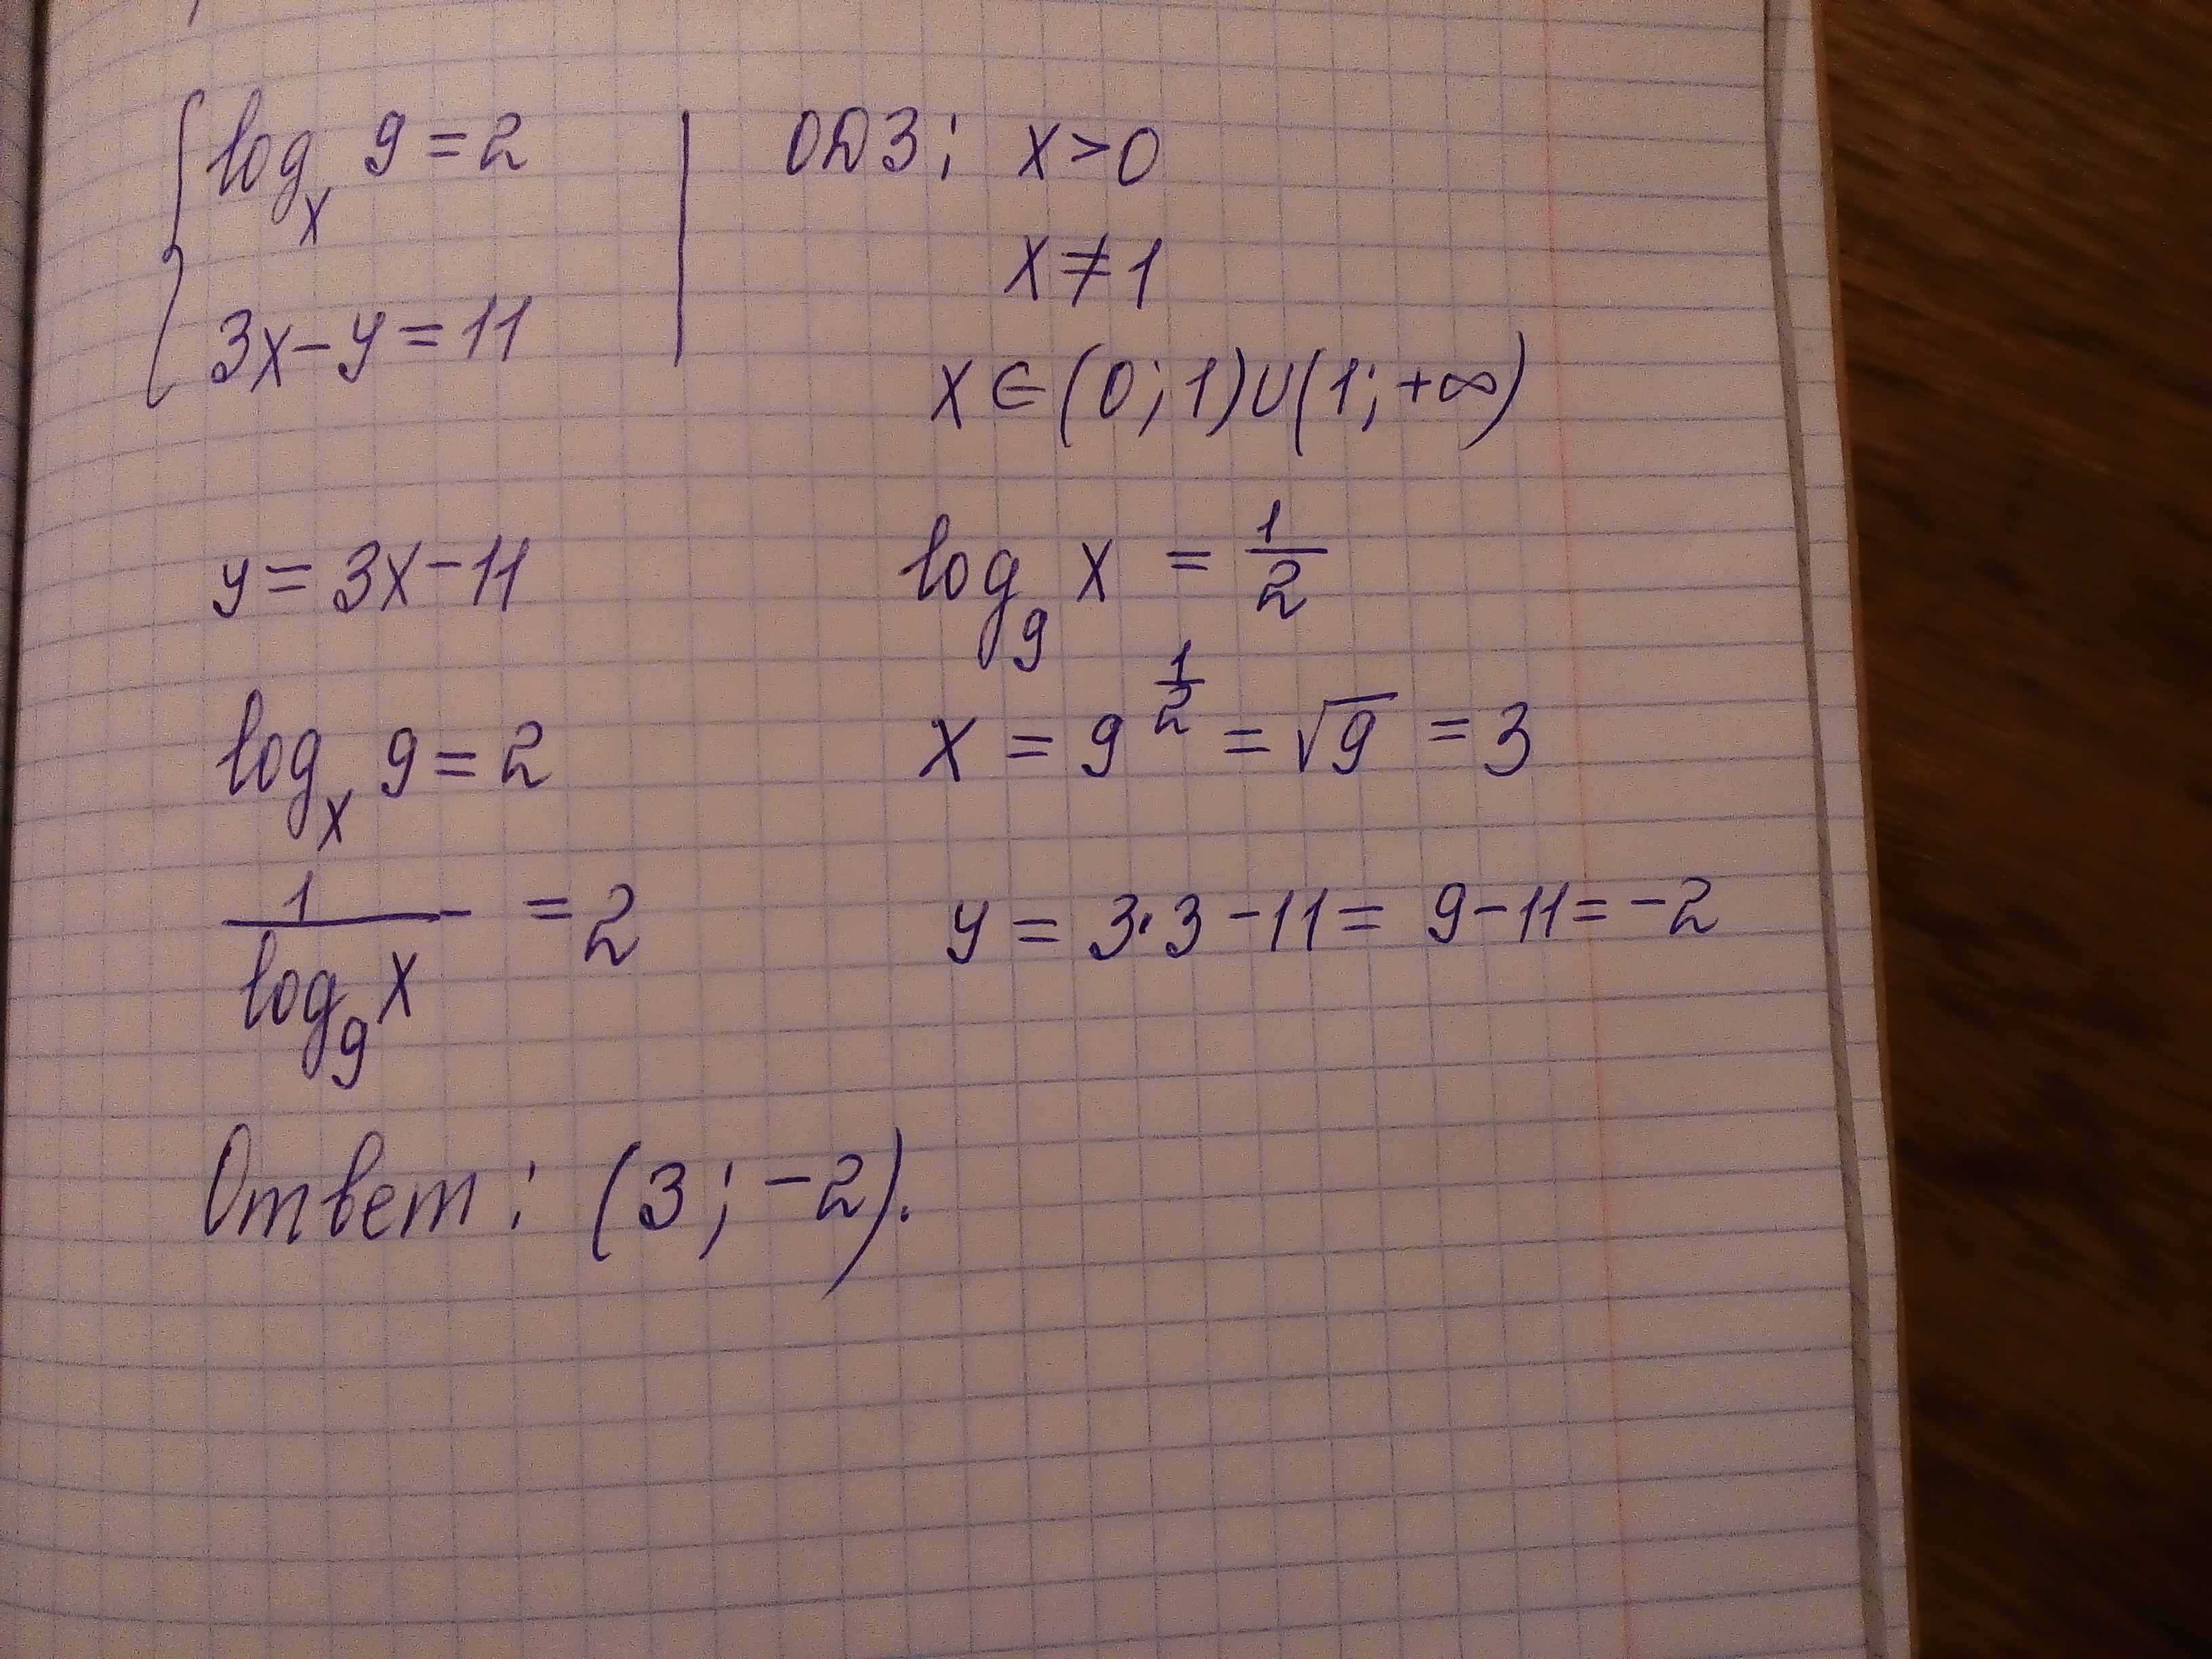 Y 11 3x 9 4. 2x+11y=15 10x-11y=9. Logx/3(logx корень из 3-x). 2x+11y 10x-11y. 2x+11y=15.